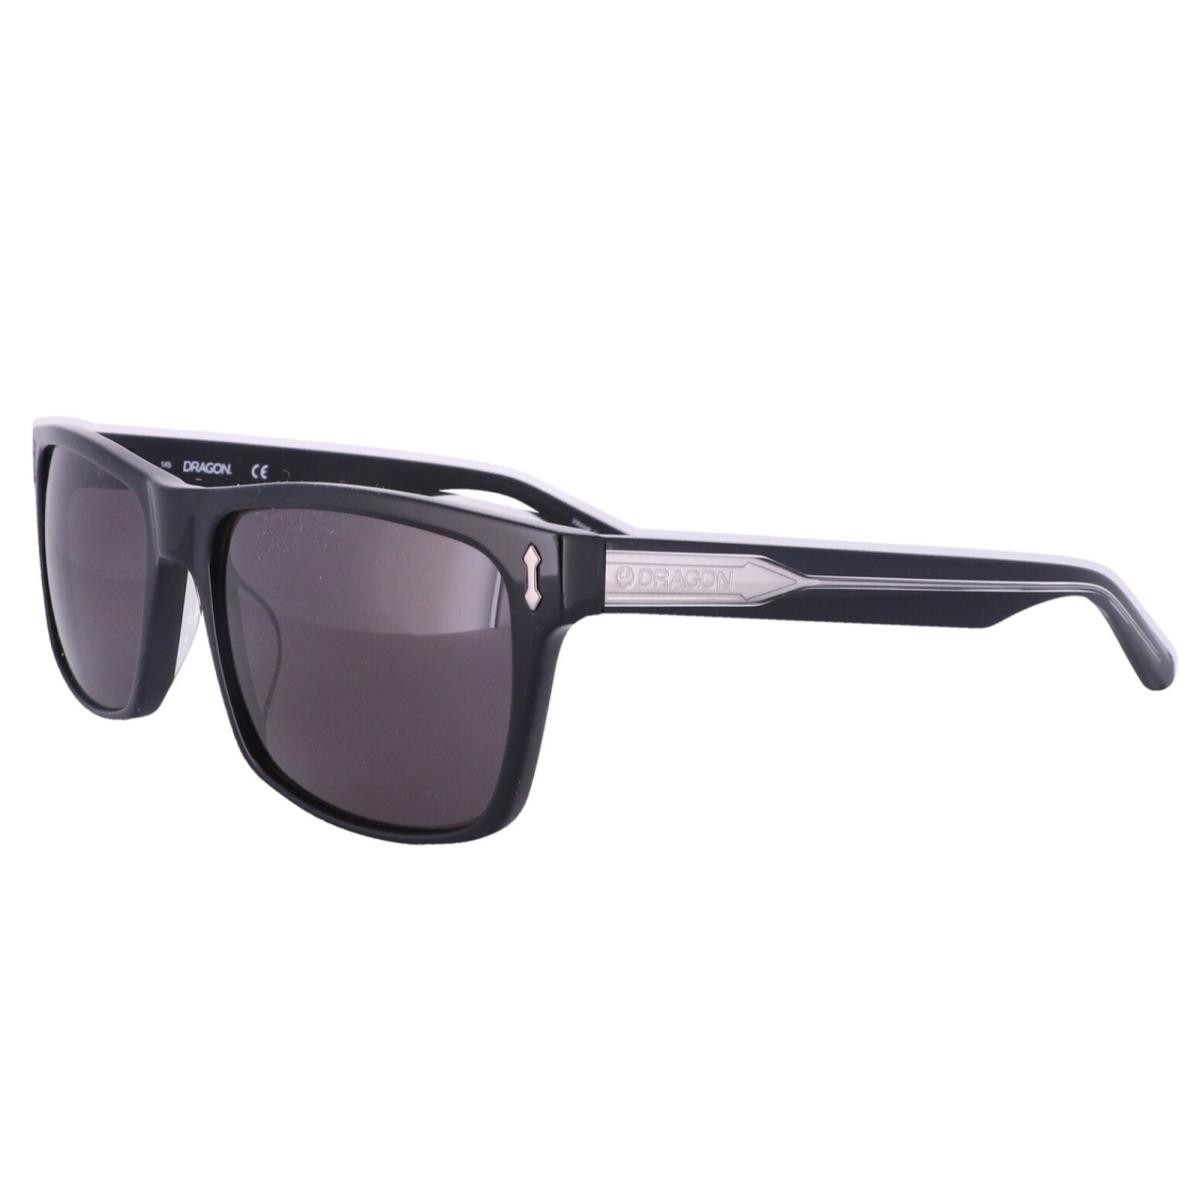 Dragon Blindside Sunglasses DR515S 001 57-18 145 Black Frames w/ Grey Lenses - Frame: Polished Black, Lens: Blue-Grey